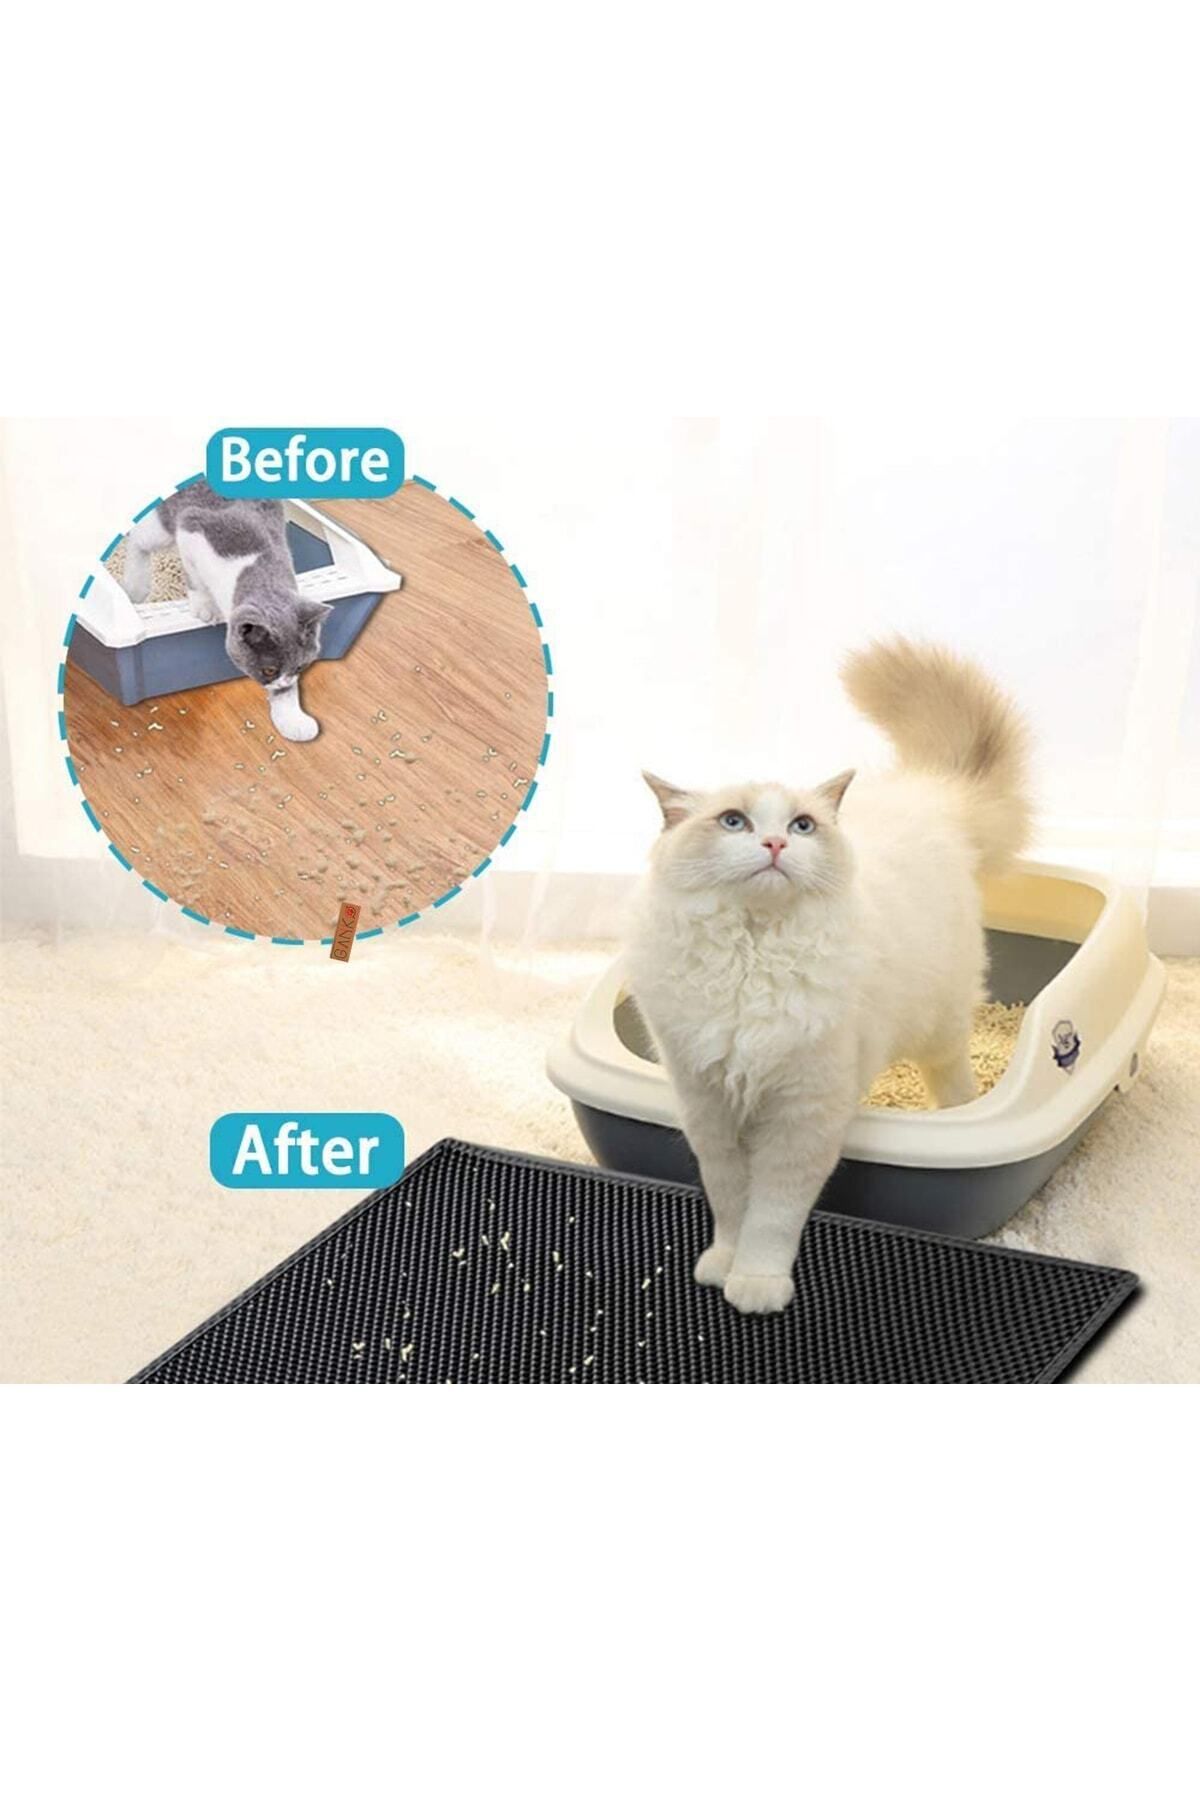 Zerabey Elekli Kedi Tuvalet Önü Paspası Kedi Kumu Paspası Farklı Renklerde